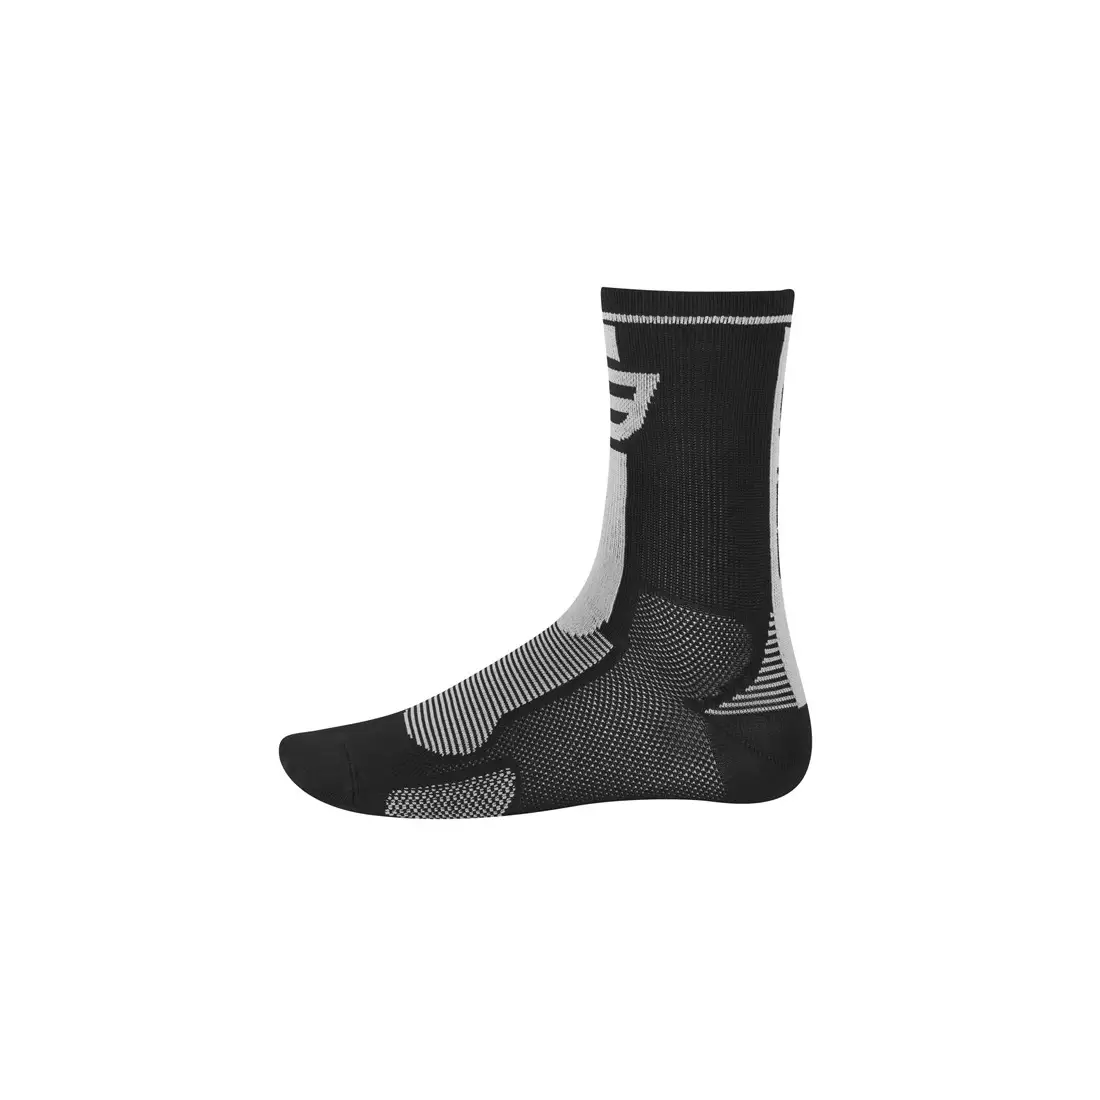 FORCE LONG čierne športové ponožky